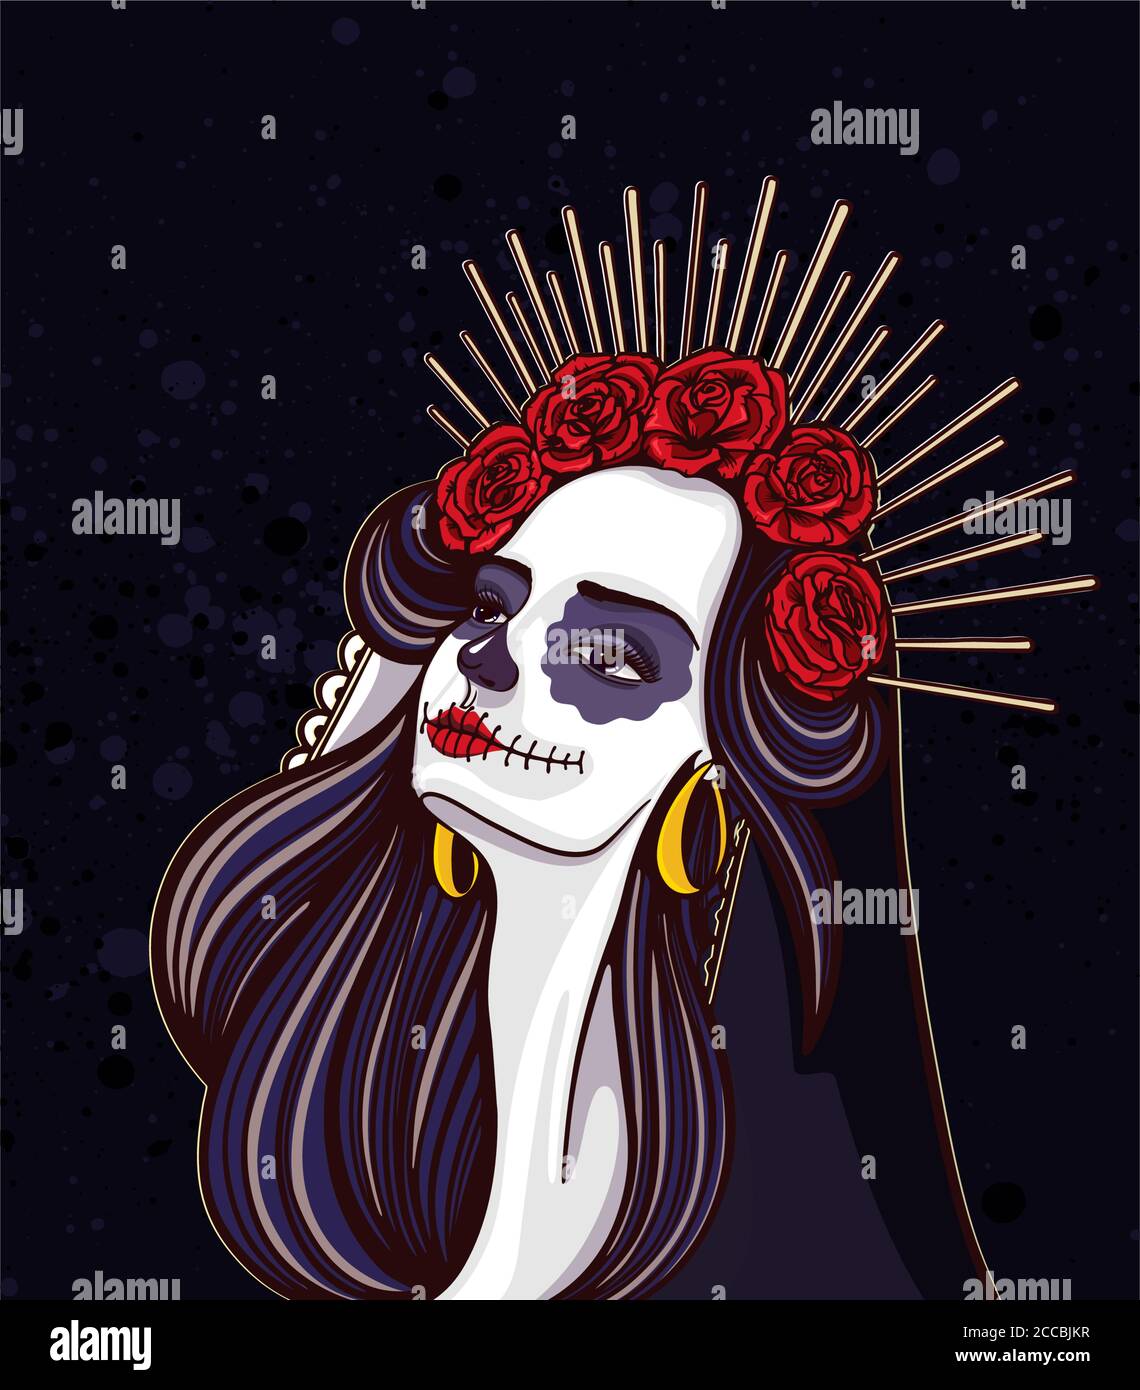 Dia de los muertos. Girl with makeup - sugar skull with rose flowers. Lettering Dia de los muertos. Stock Vector